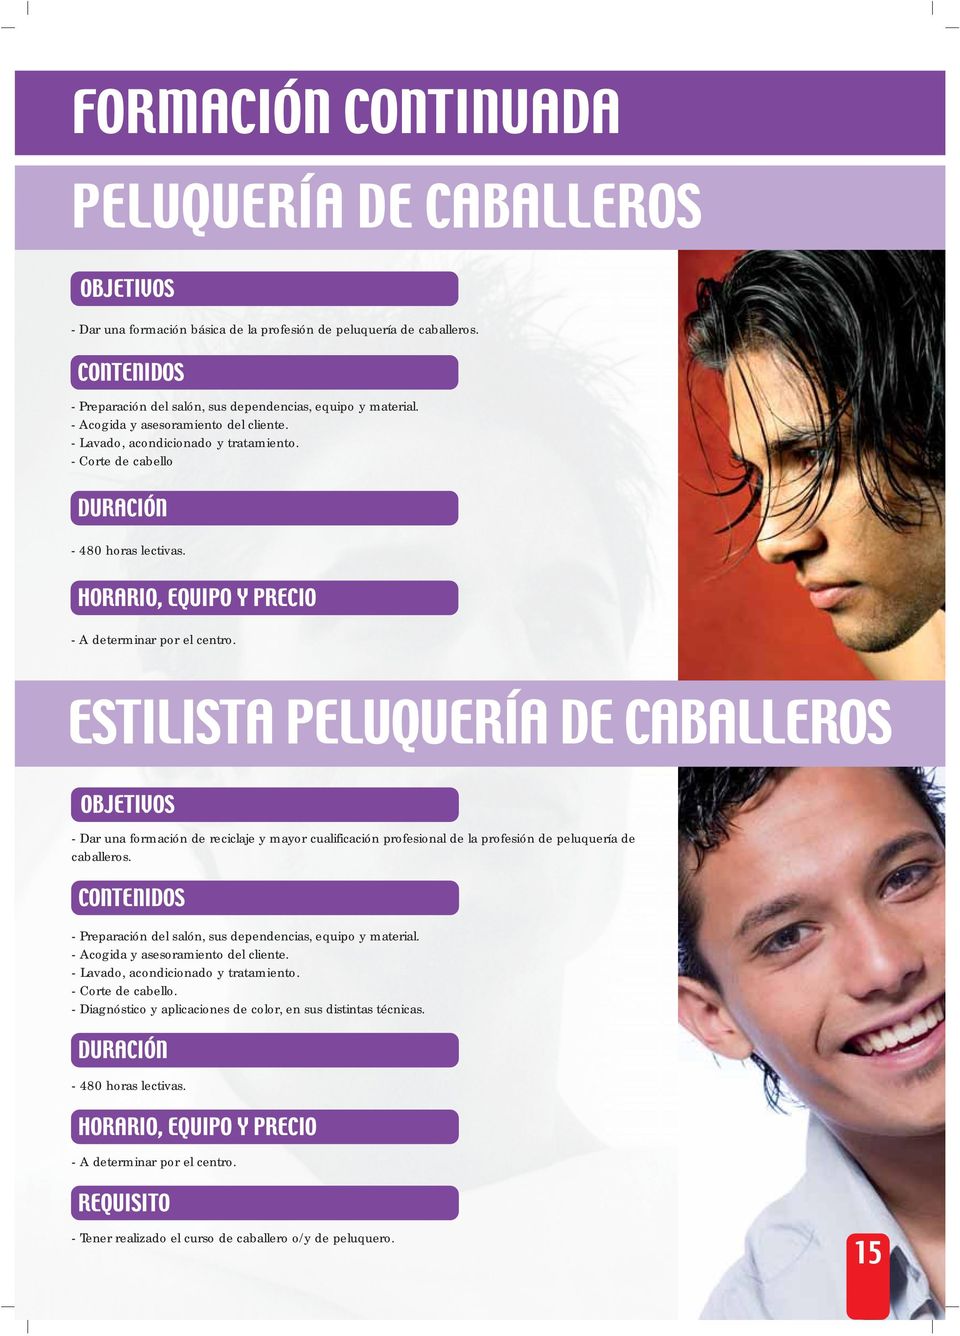 ESTILISTA PELUQUERÍA DE CABALLEROS - Dar una formación de reciclaje y mayor cualificación profesional de la profesión de peluquería de caballeros.